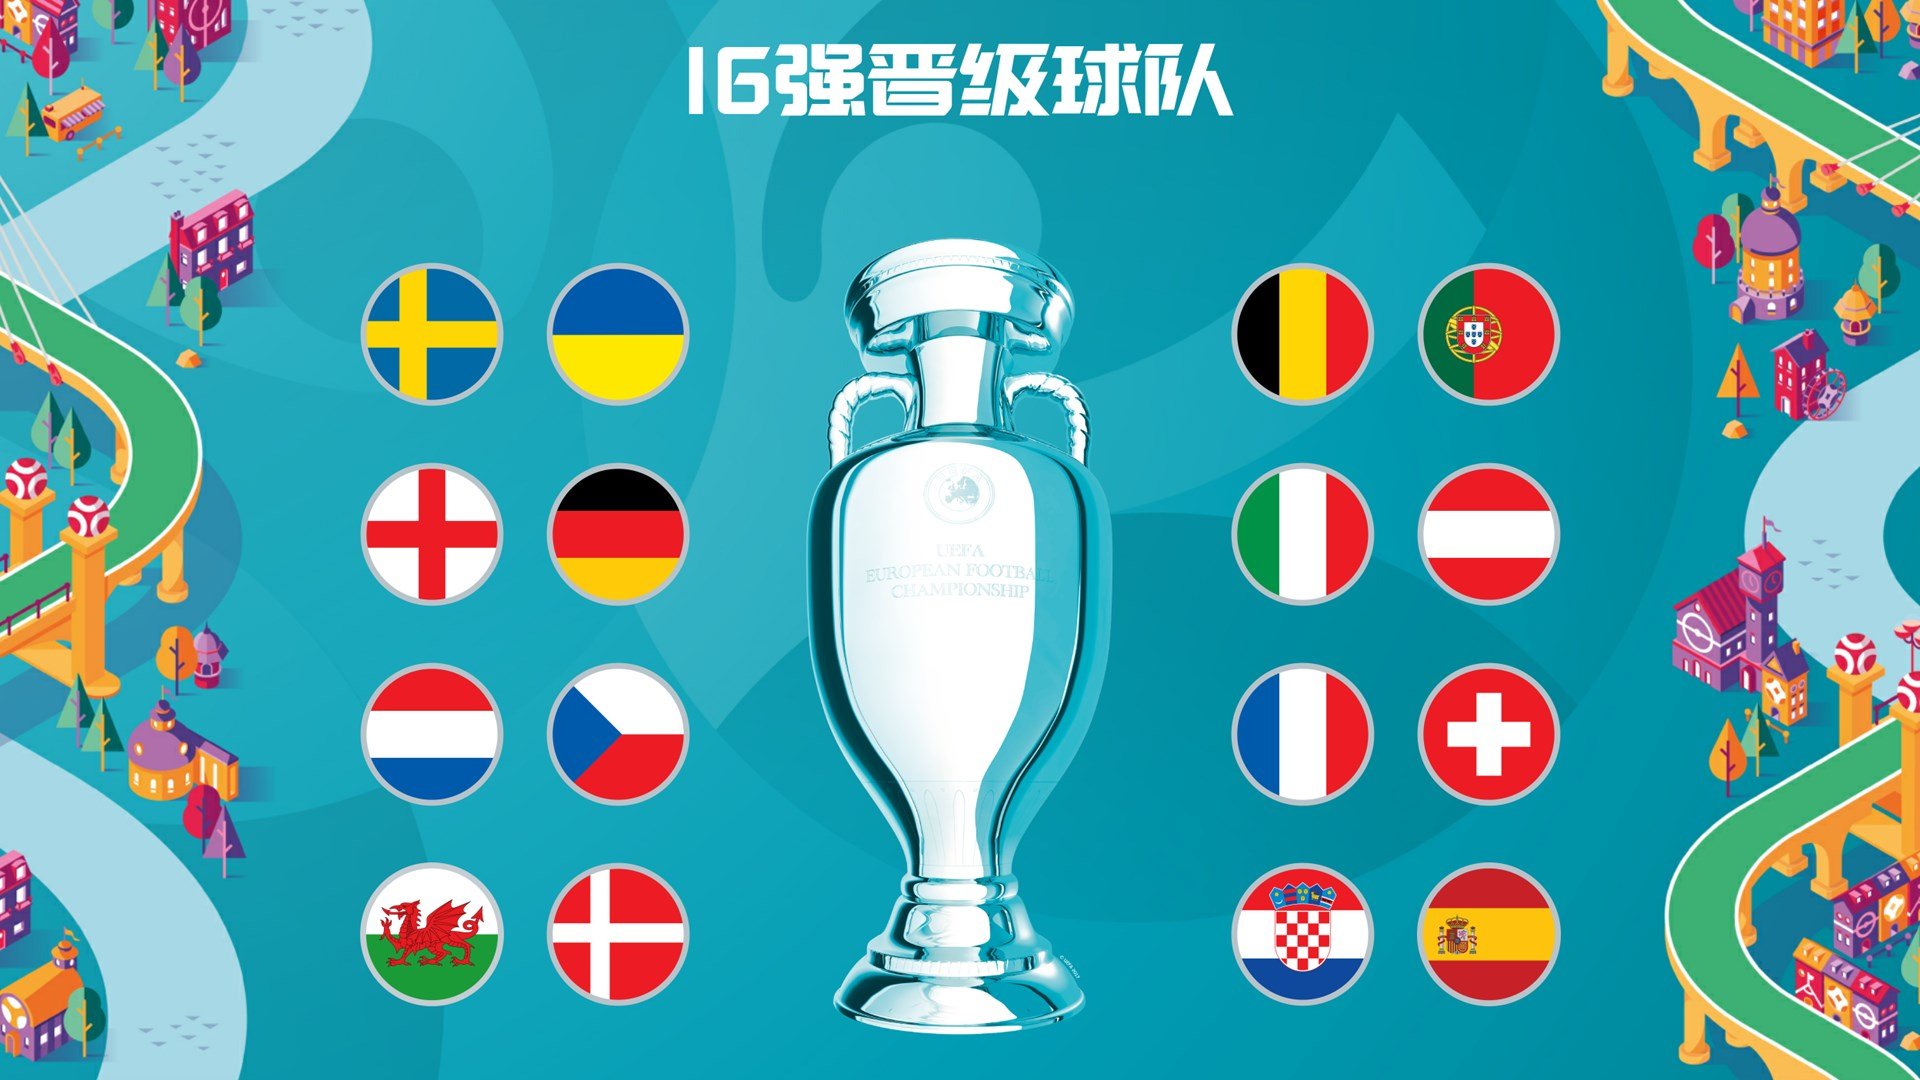 欧洲杯是世界足坛最容易诞生冷门的最高规格的赛事